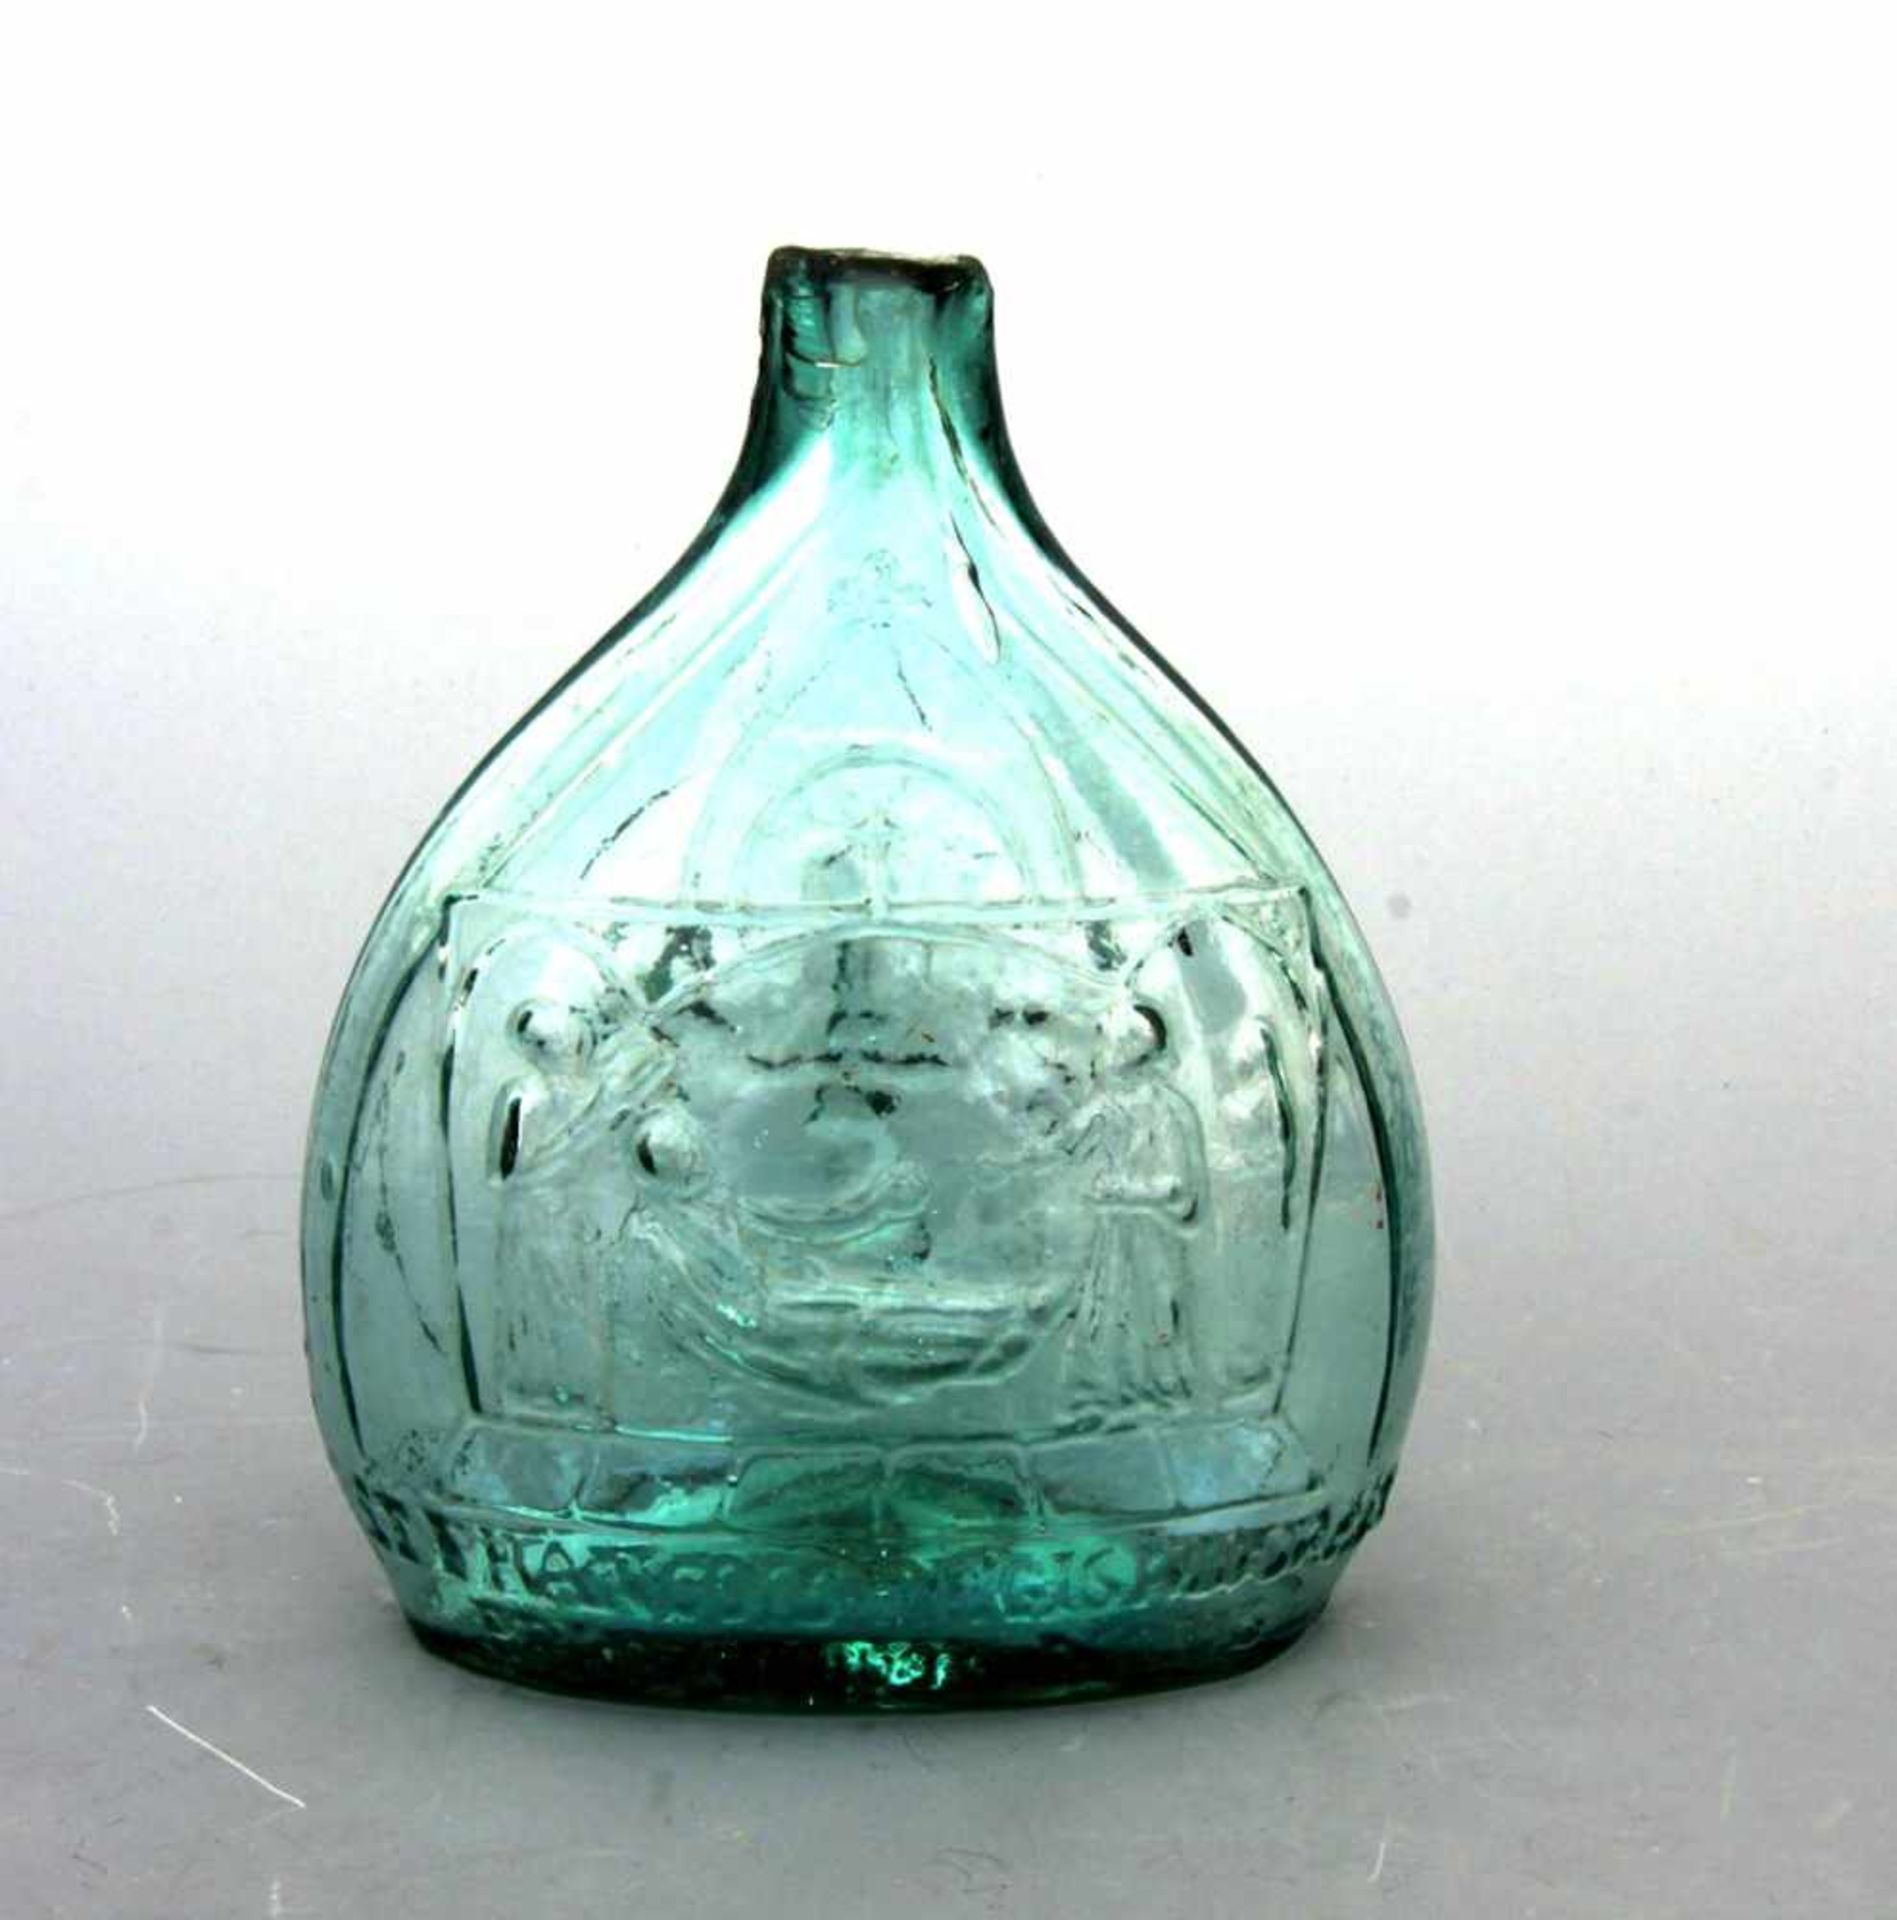 PilgerflascheGrünliches Glas in die Form geblasen. Ovaler Stand, gebauchter Korpus mit ovalem